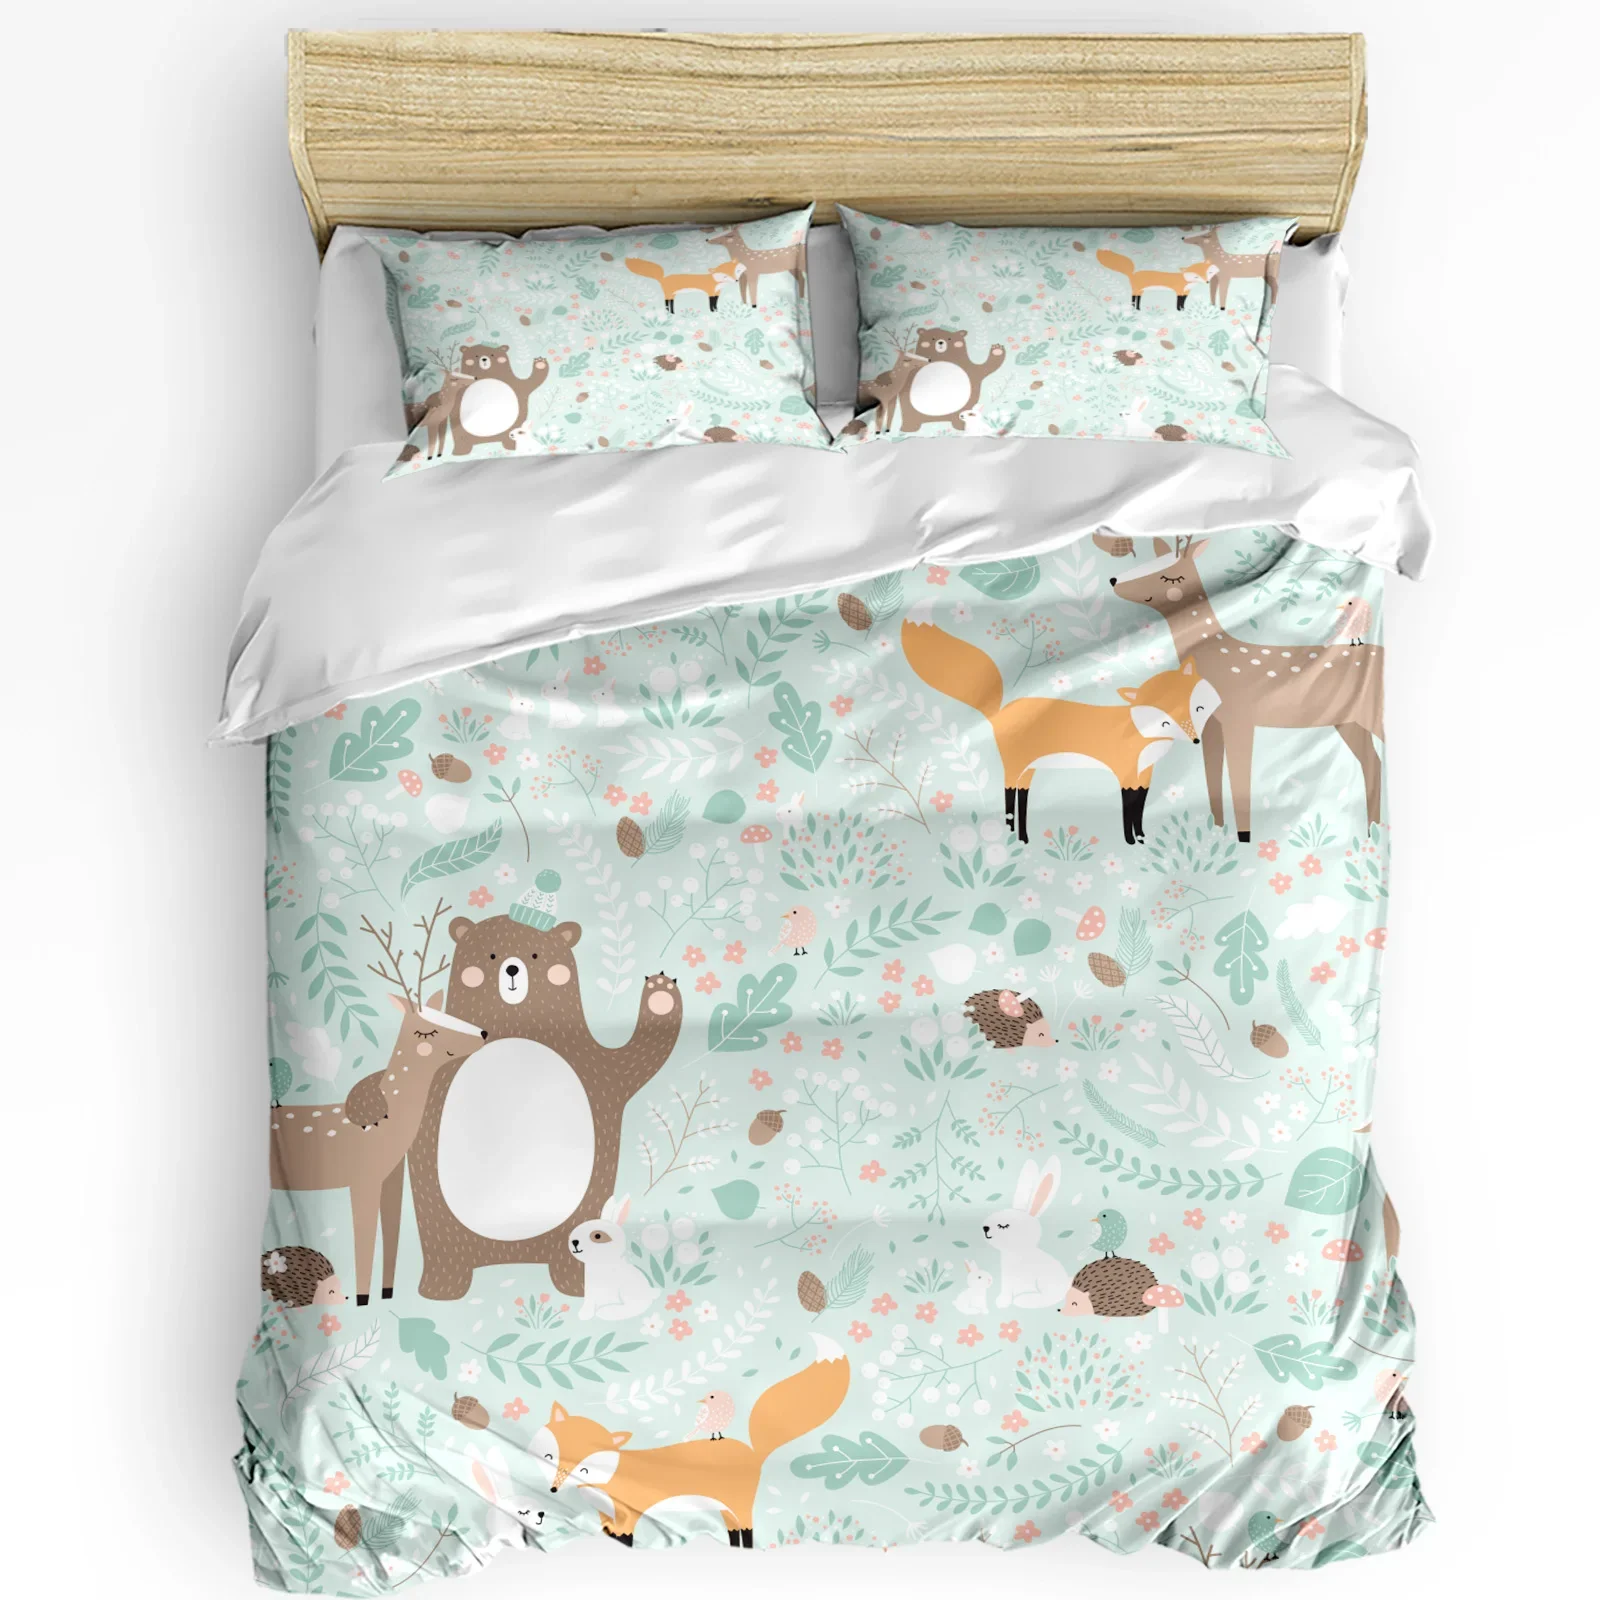 3pcs-bedding-set-forest-animal-cartoon-fox-deer-bear-home-textile-duvet-cover-pillow-case-boy-kid-teen-girl-bedding-covers-set